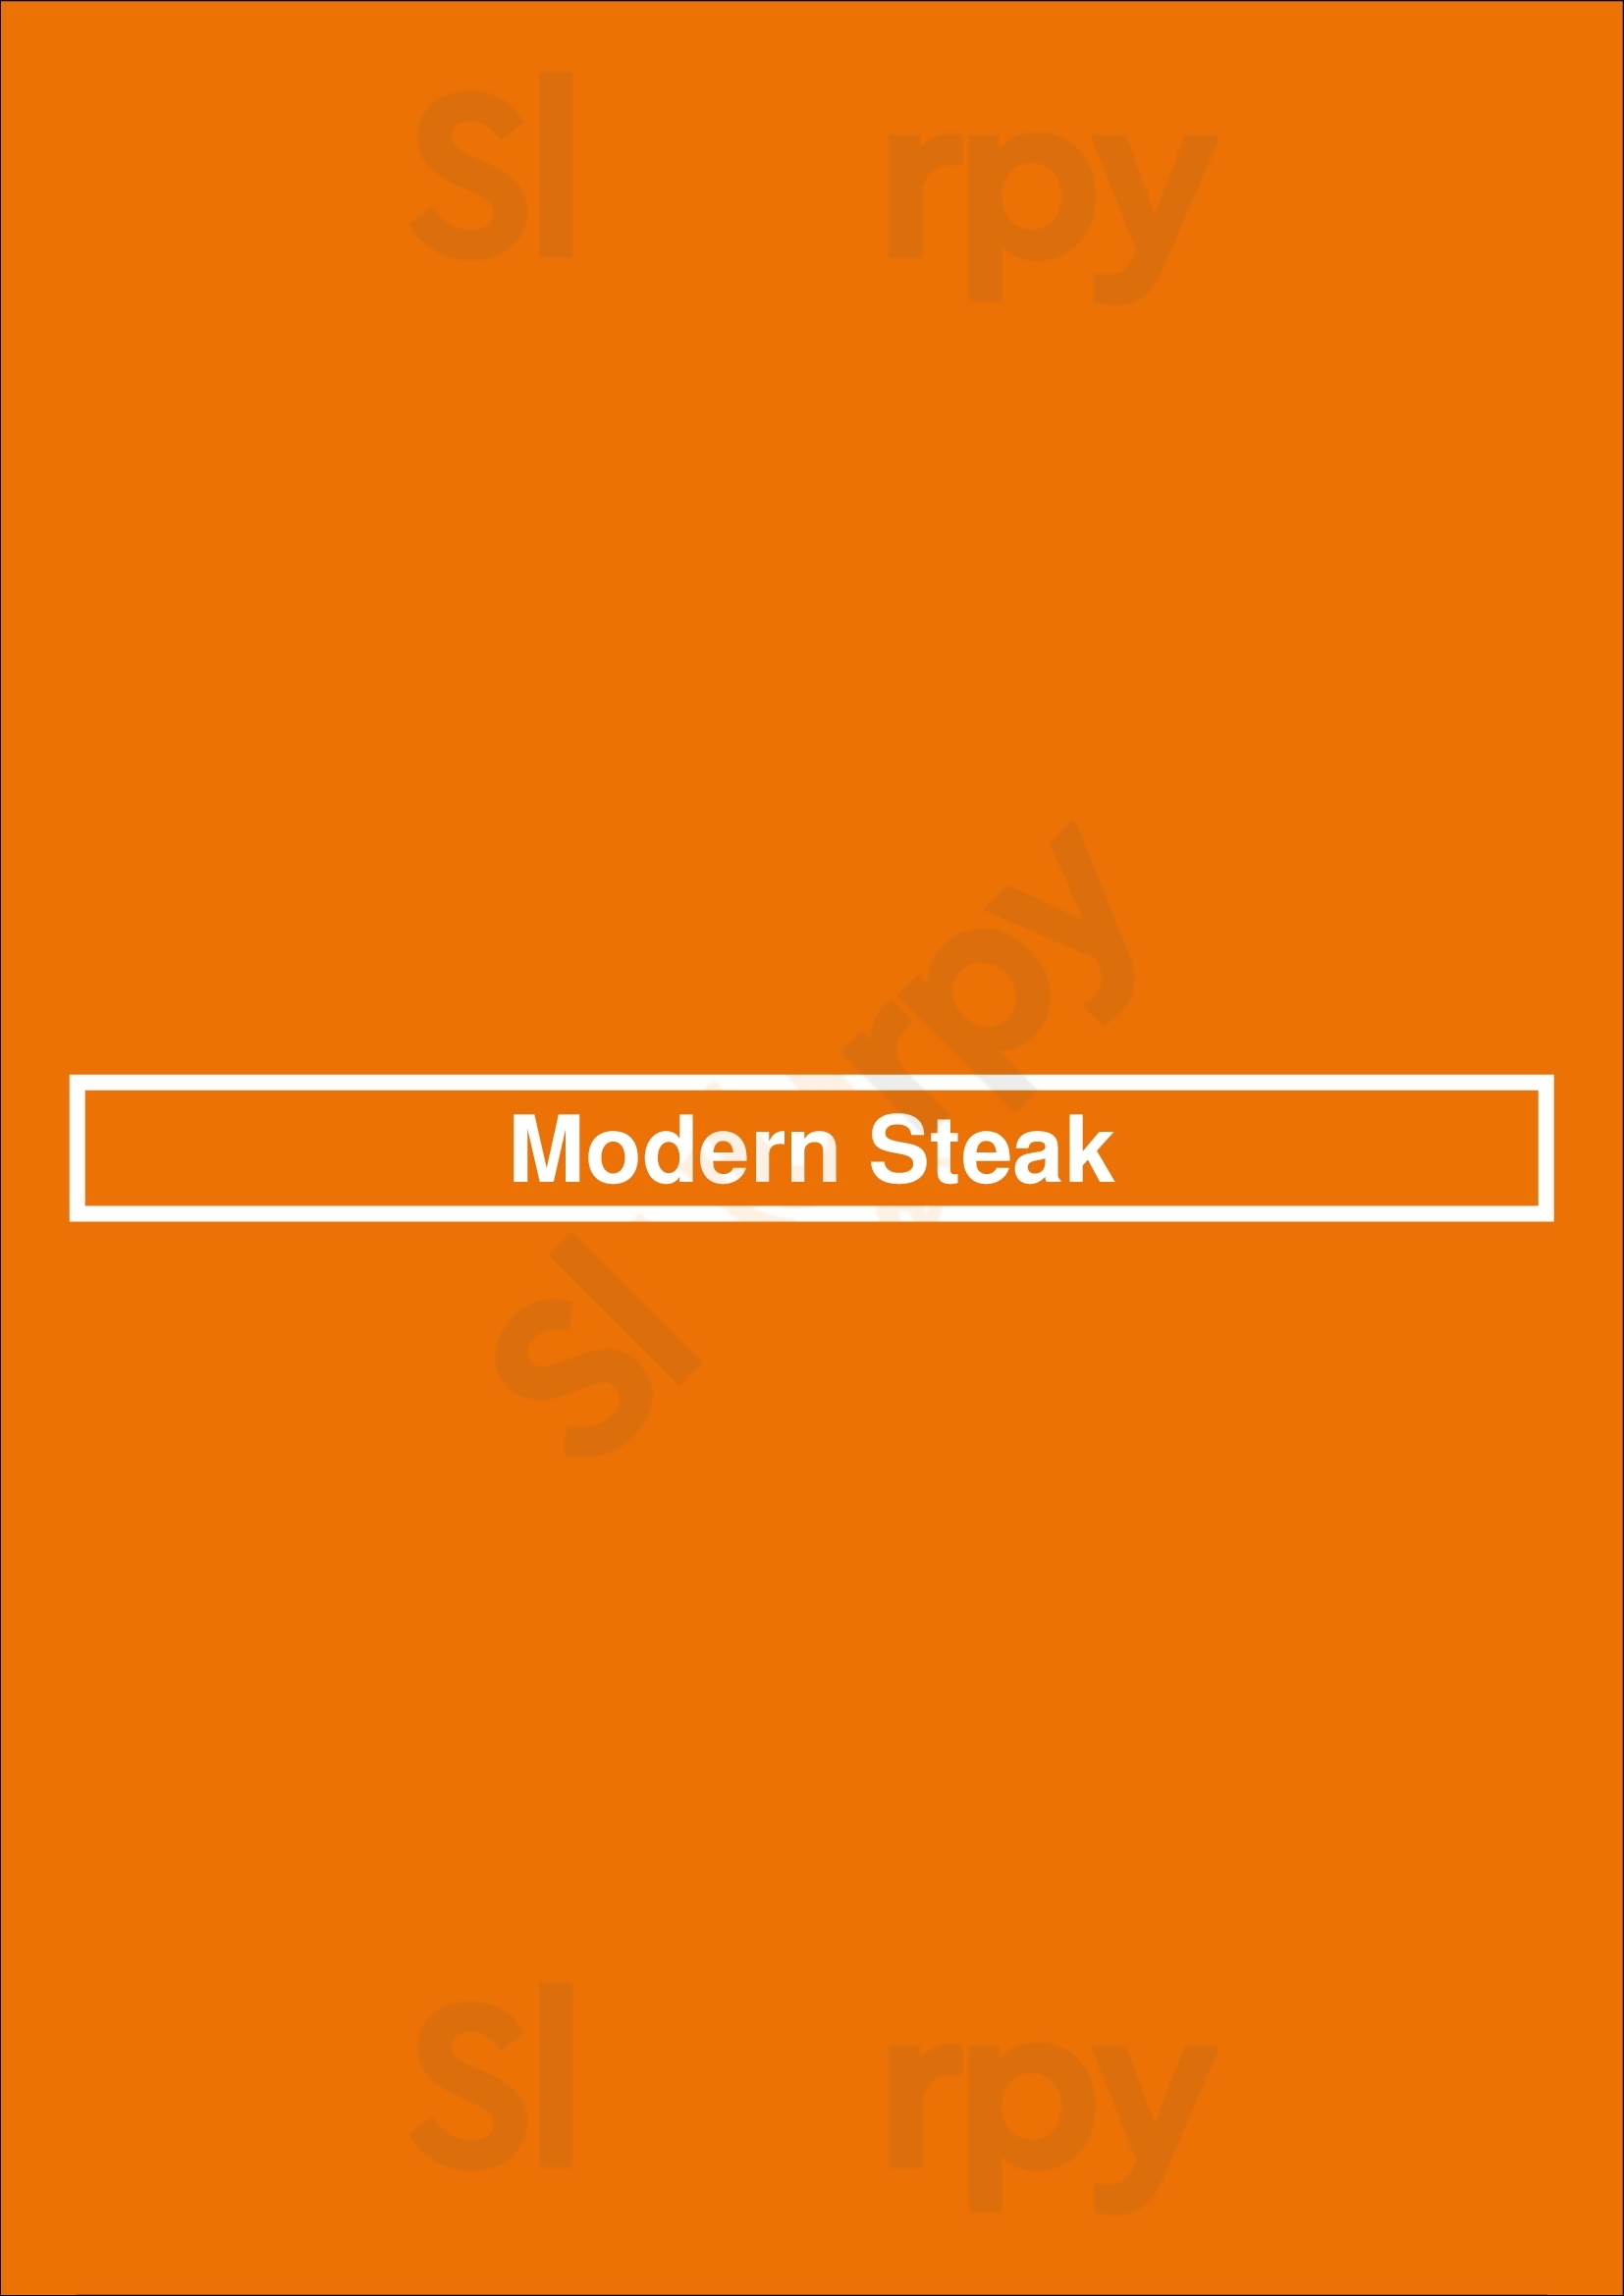 Modern Steak Calgary Menu - 1